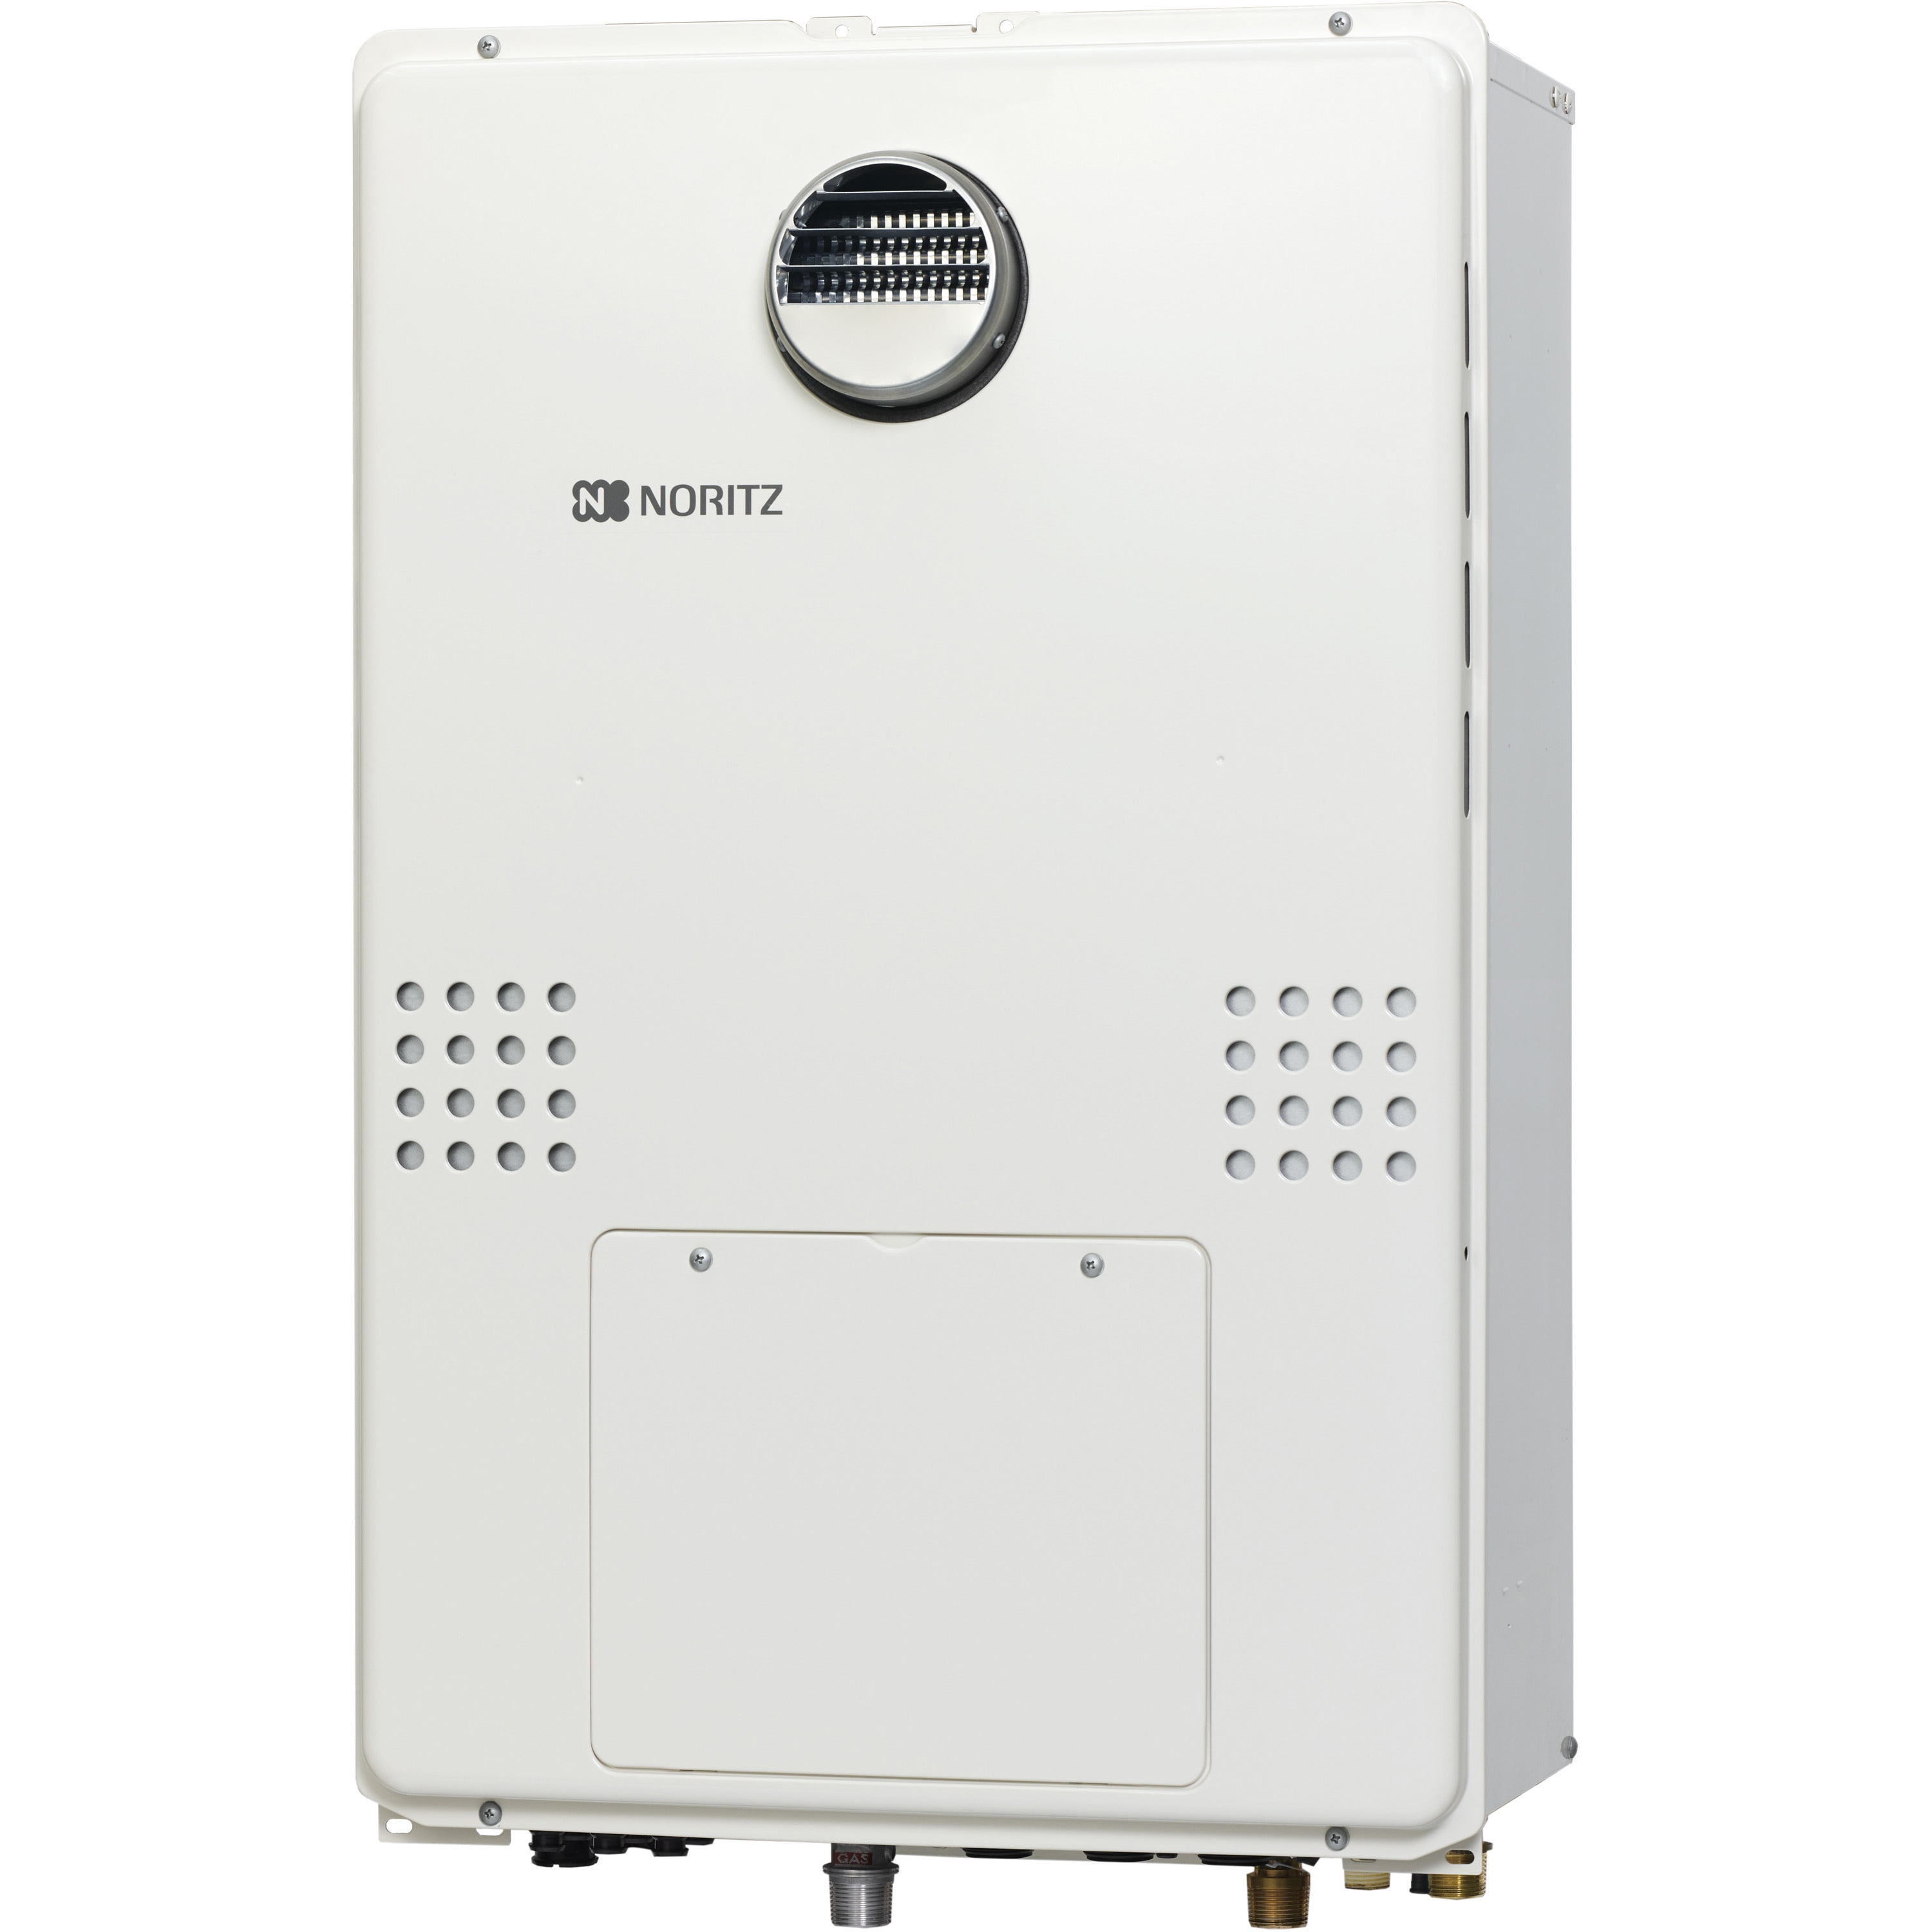 GTH-C1660SAW-1 BL 高効率ガス温水暖房付ふろ給湯器(オート) 屋外壁掛